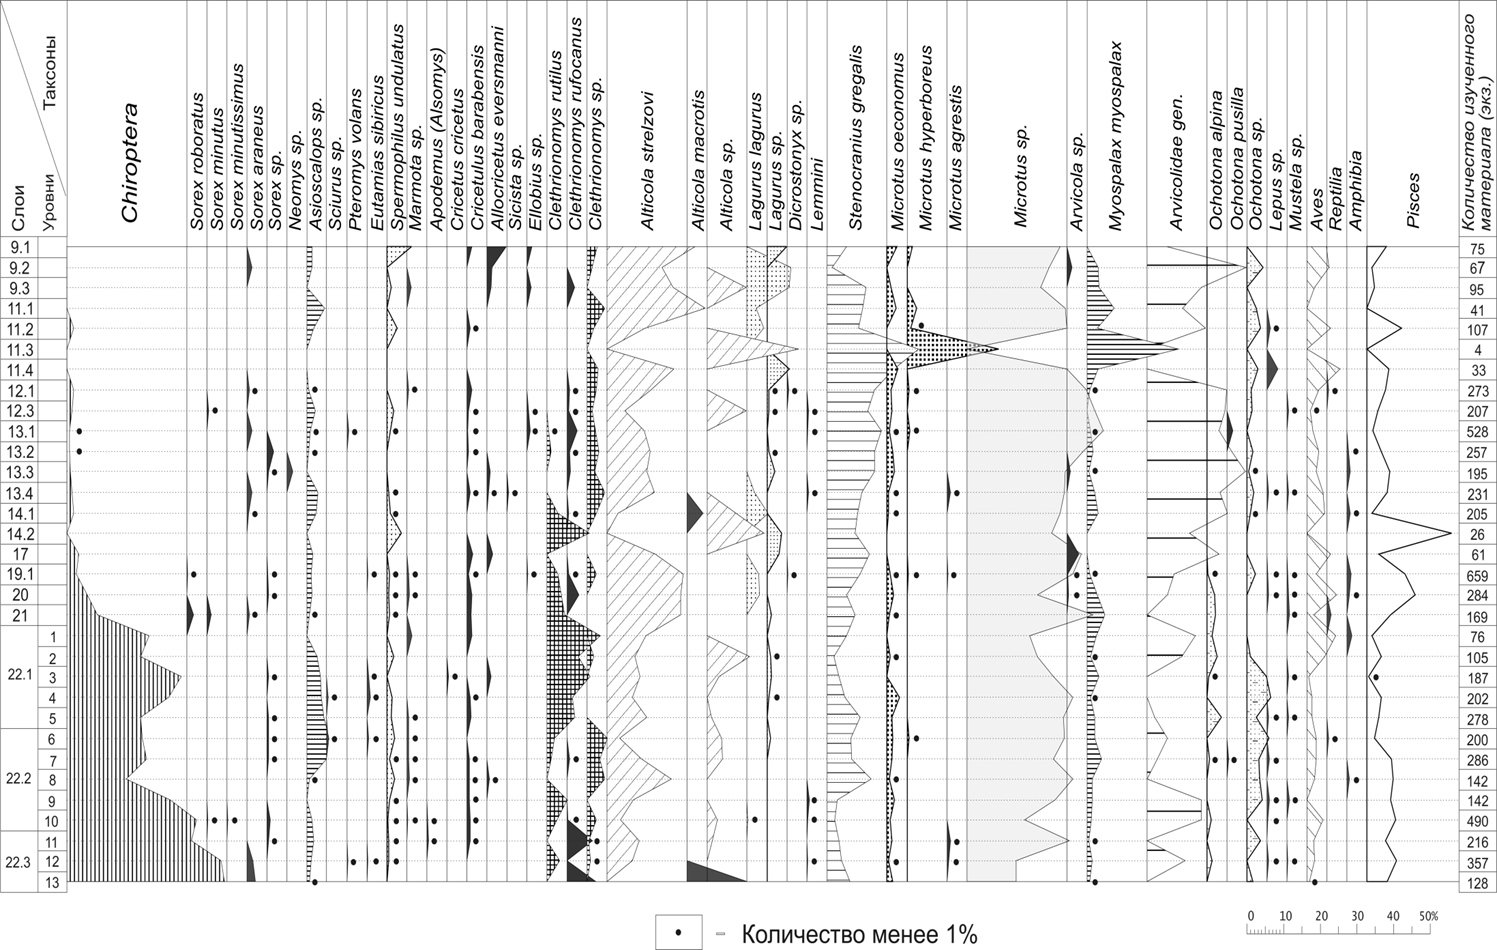 Состав мелких позвоночных плейстоцена Денисовой пещеры